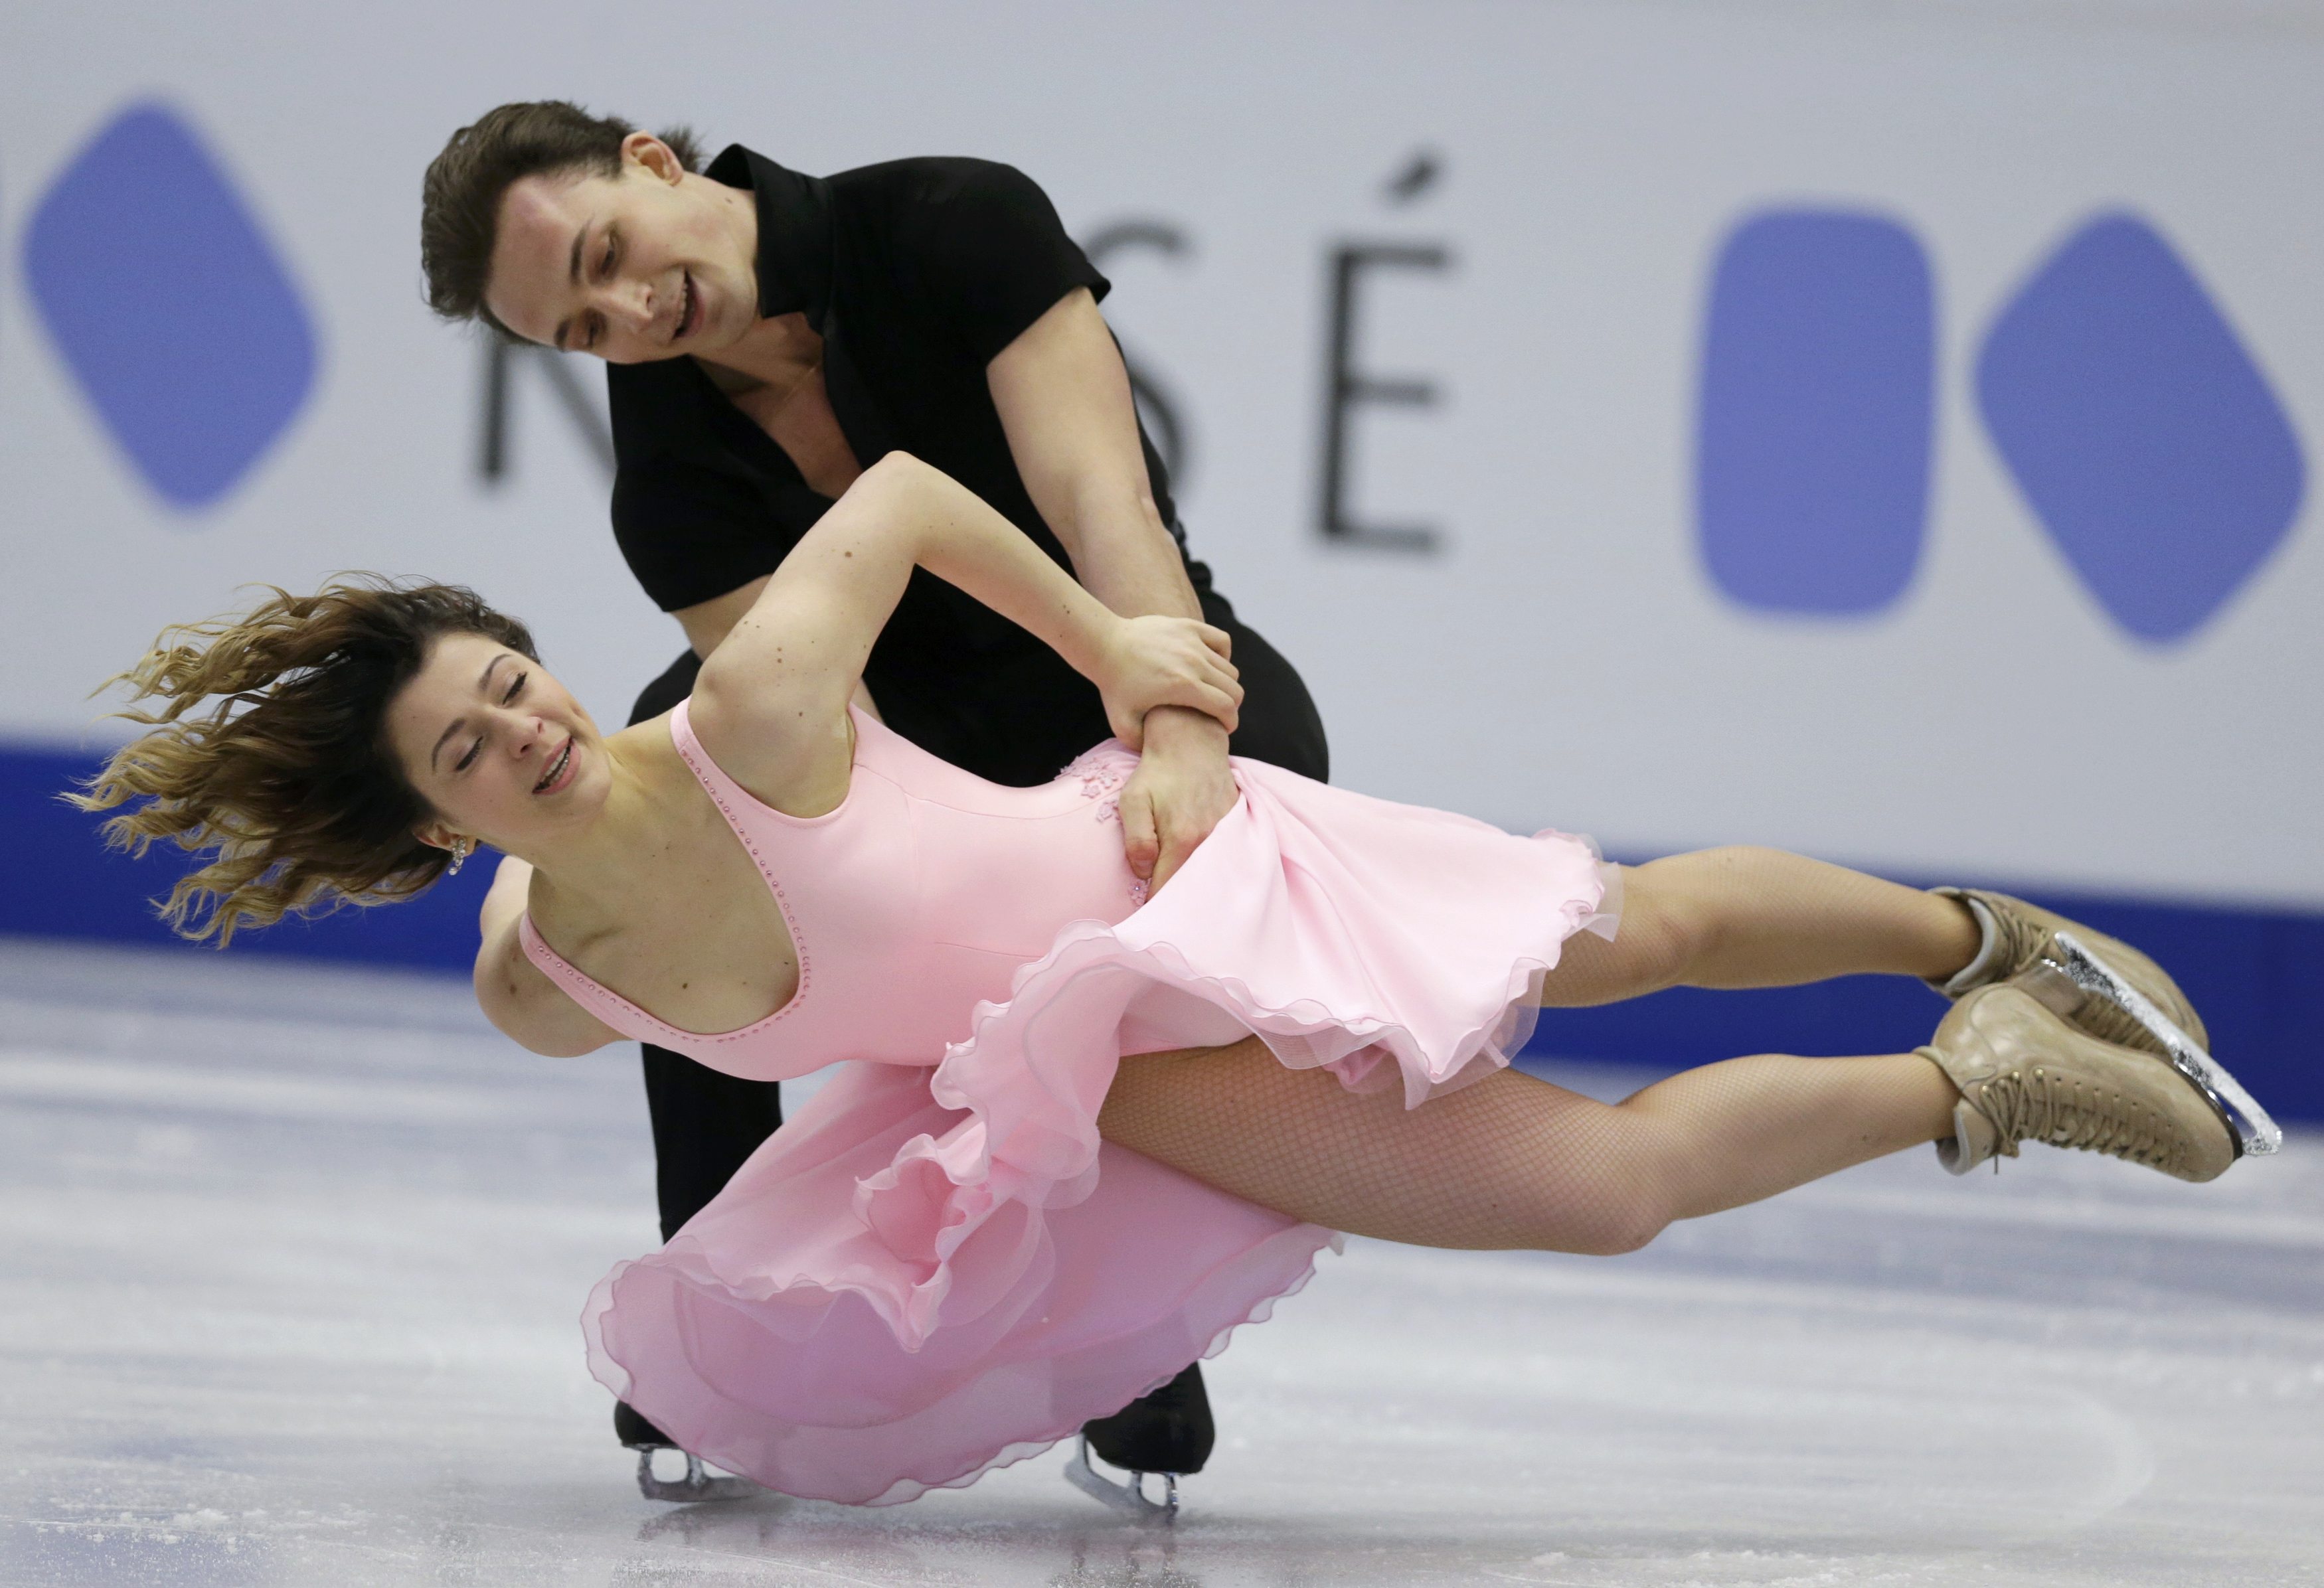 بطولة كأس الأمم الأوروبية 2017 للرقص الحر على الجليد (3)